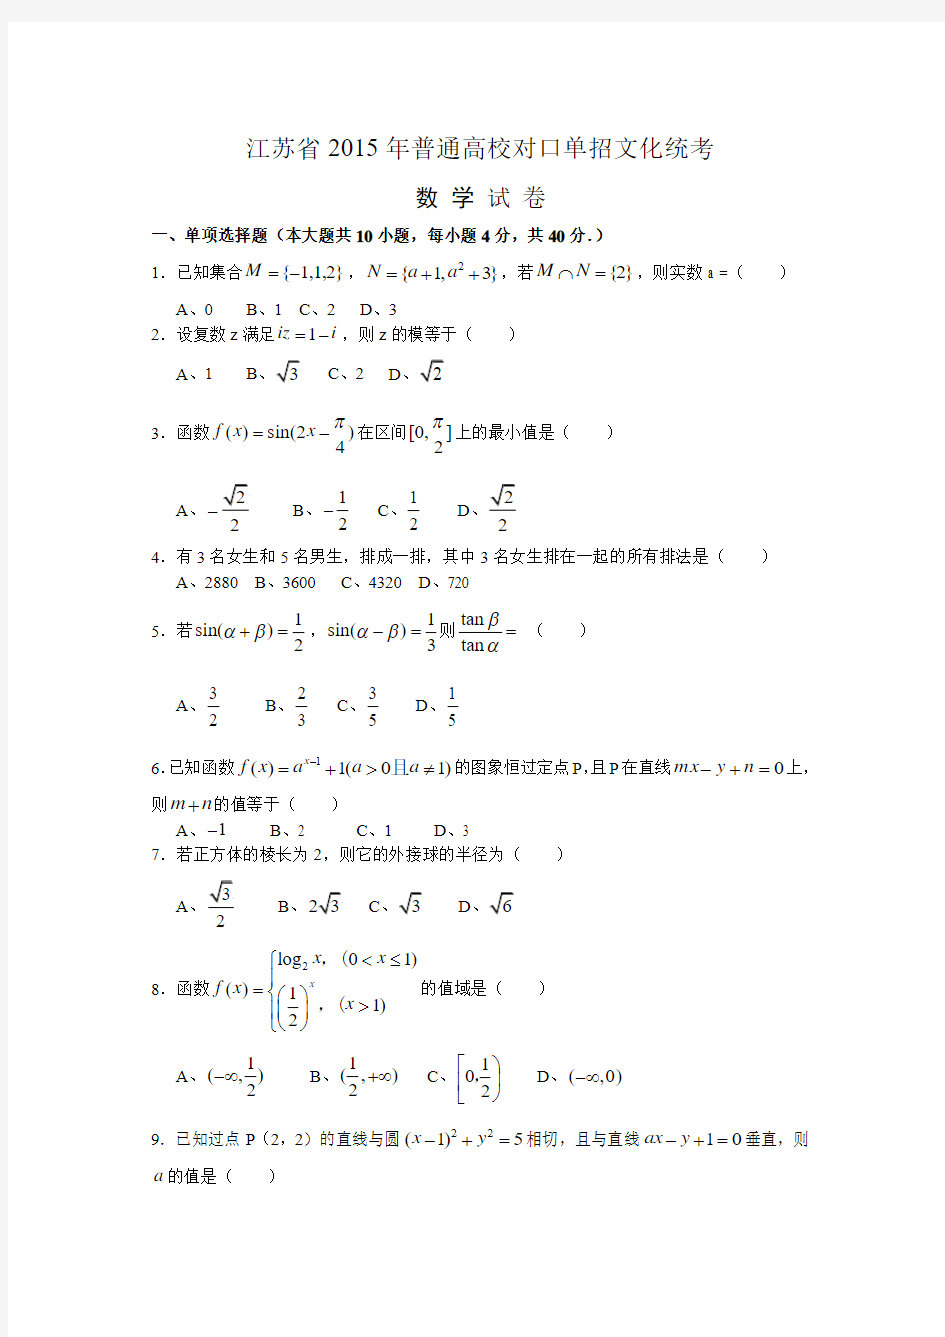 江苏省2015年普通高校对口单招文化统考数学试卷和答案(最新)